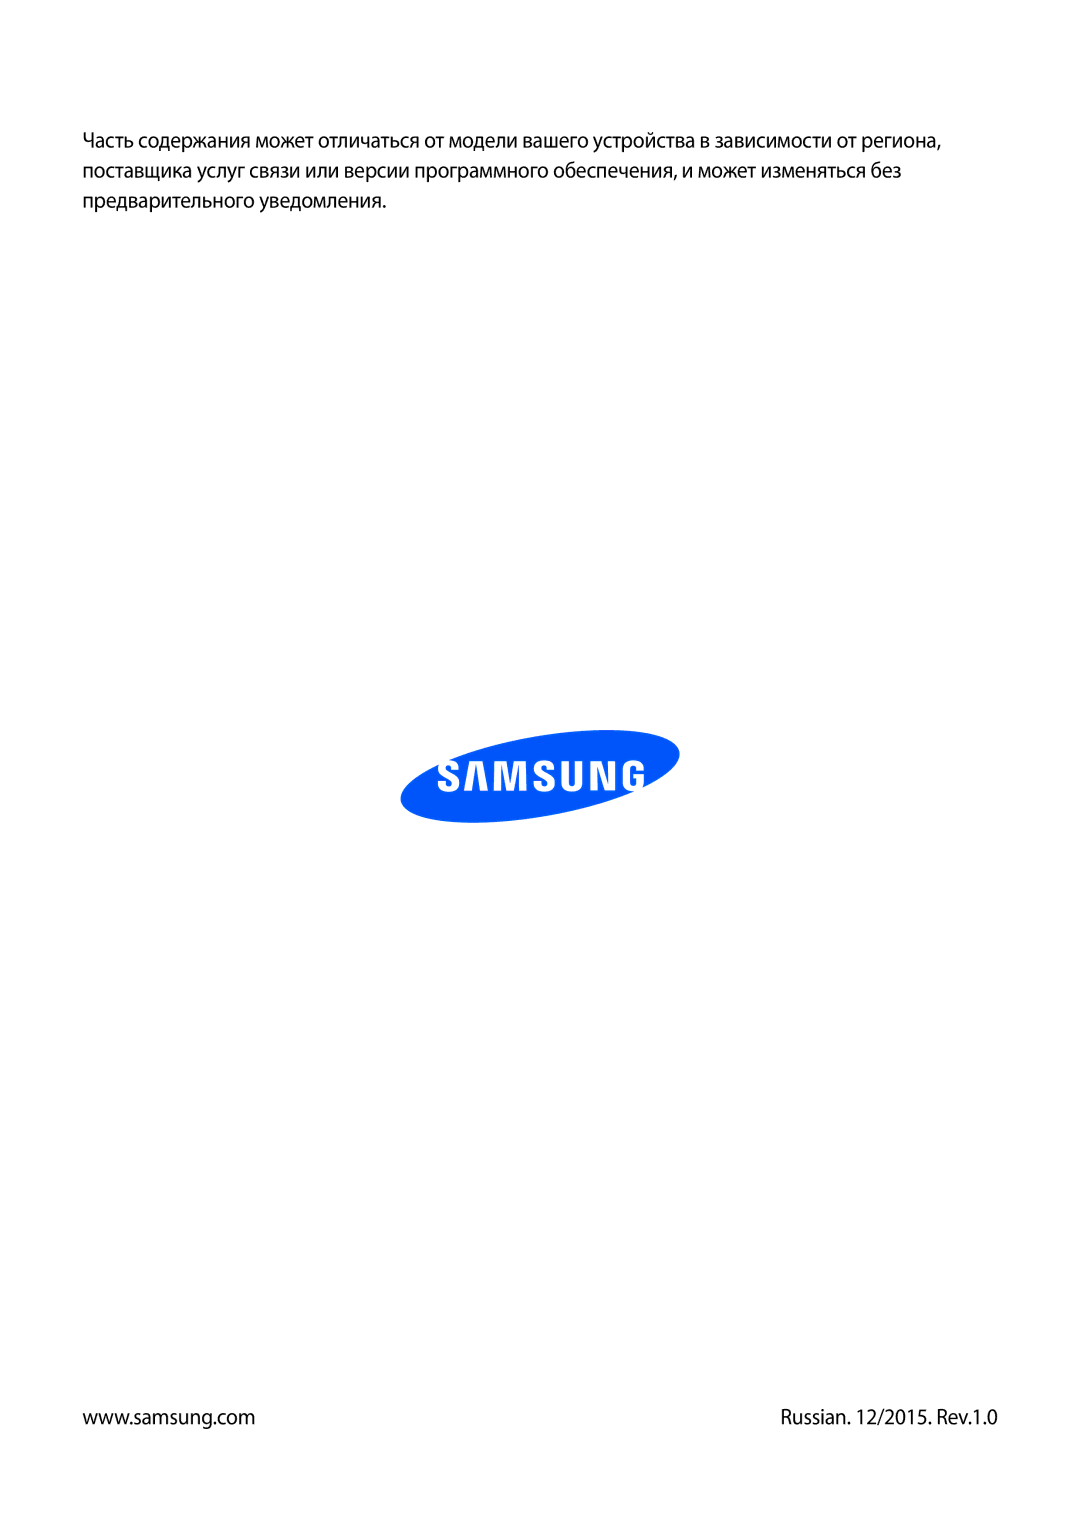 Samsung SM-P6010ZKESER, SM-P6010ZKAMGF, SM-P6010ZKASER, SM-P6010ZKEMGF, SM-P6010ZWAMGF, SM-P6010ZWESER Russian /2015. Rev.1.0 